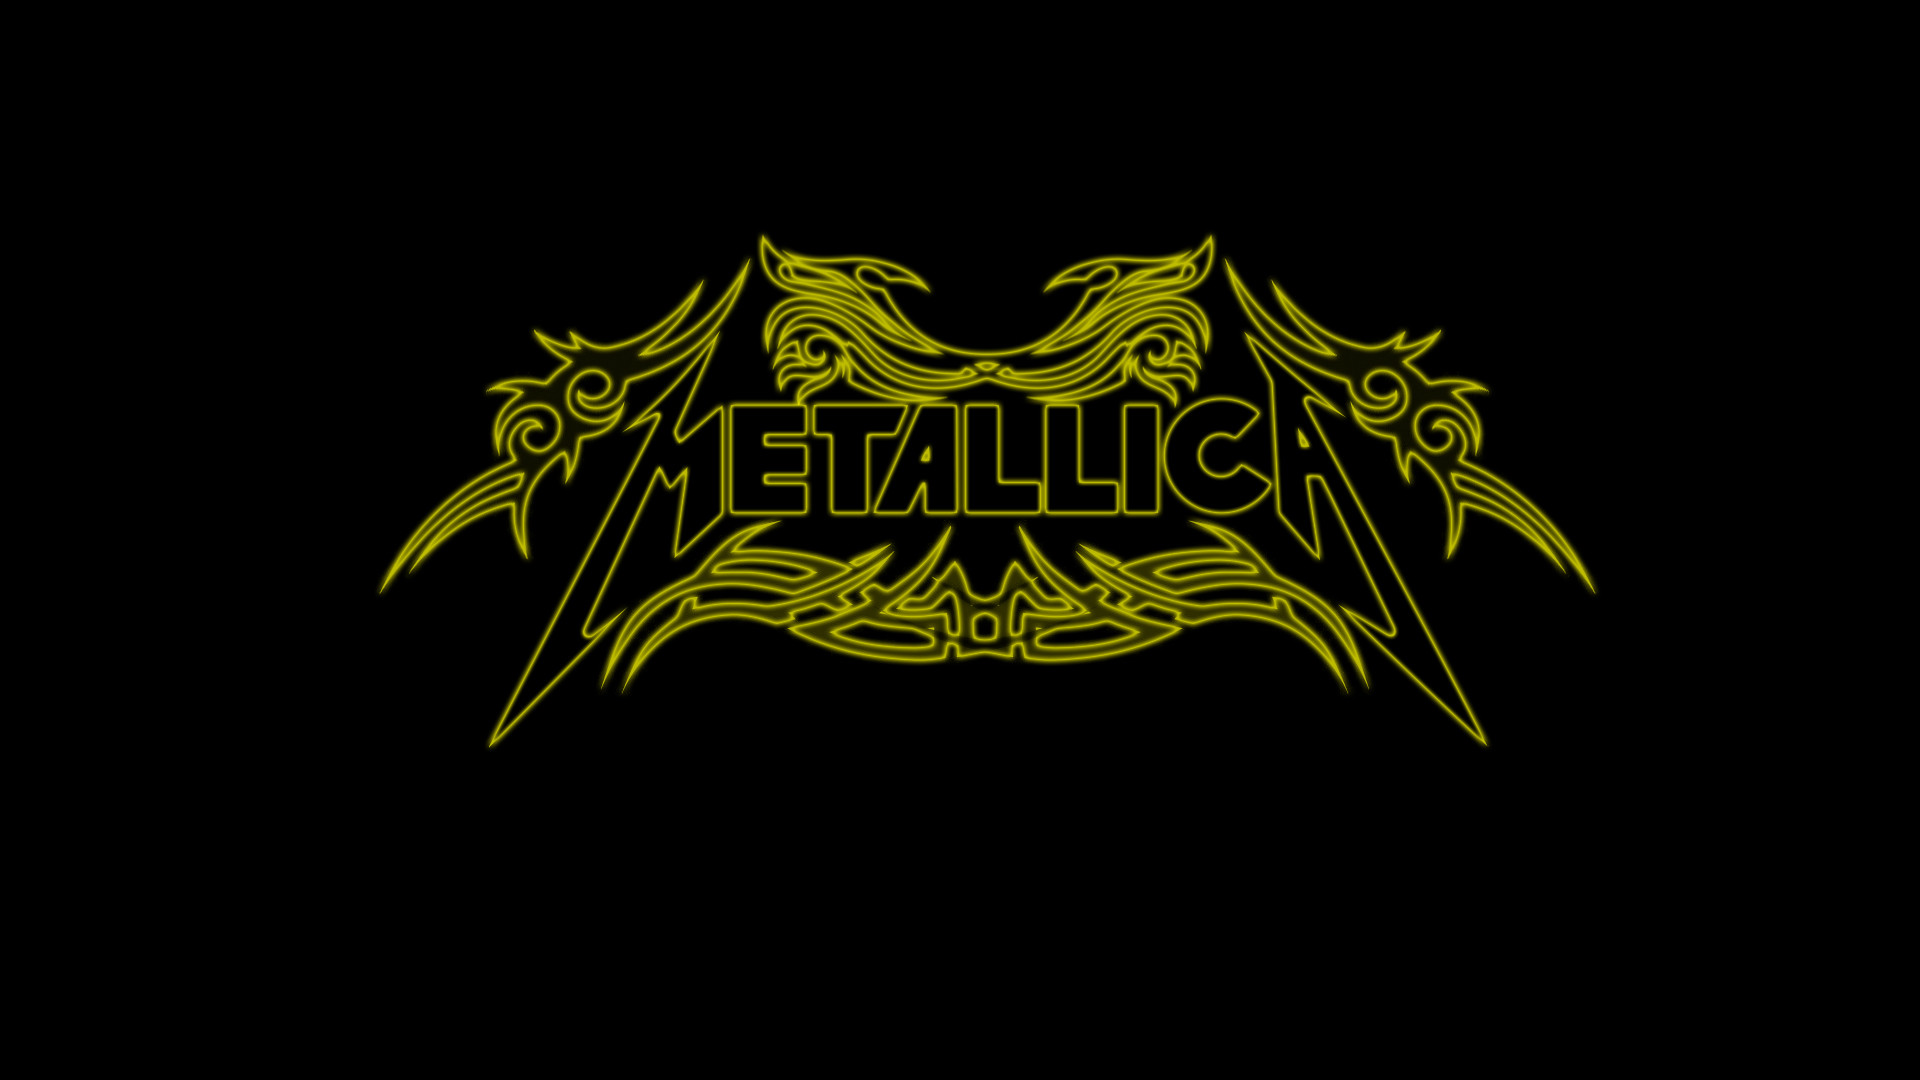 1920x1080 Metallica Wallpaper Widescreen ...